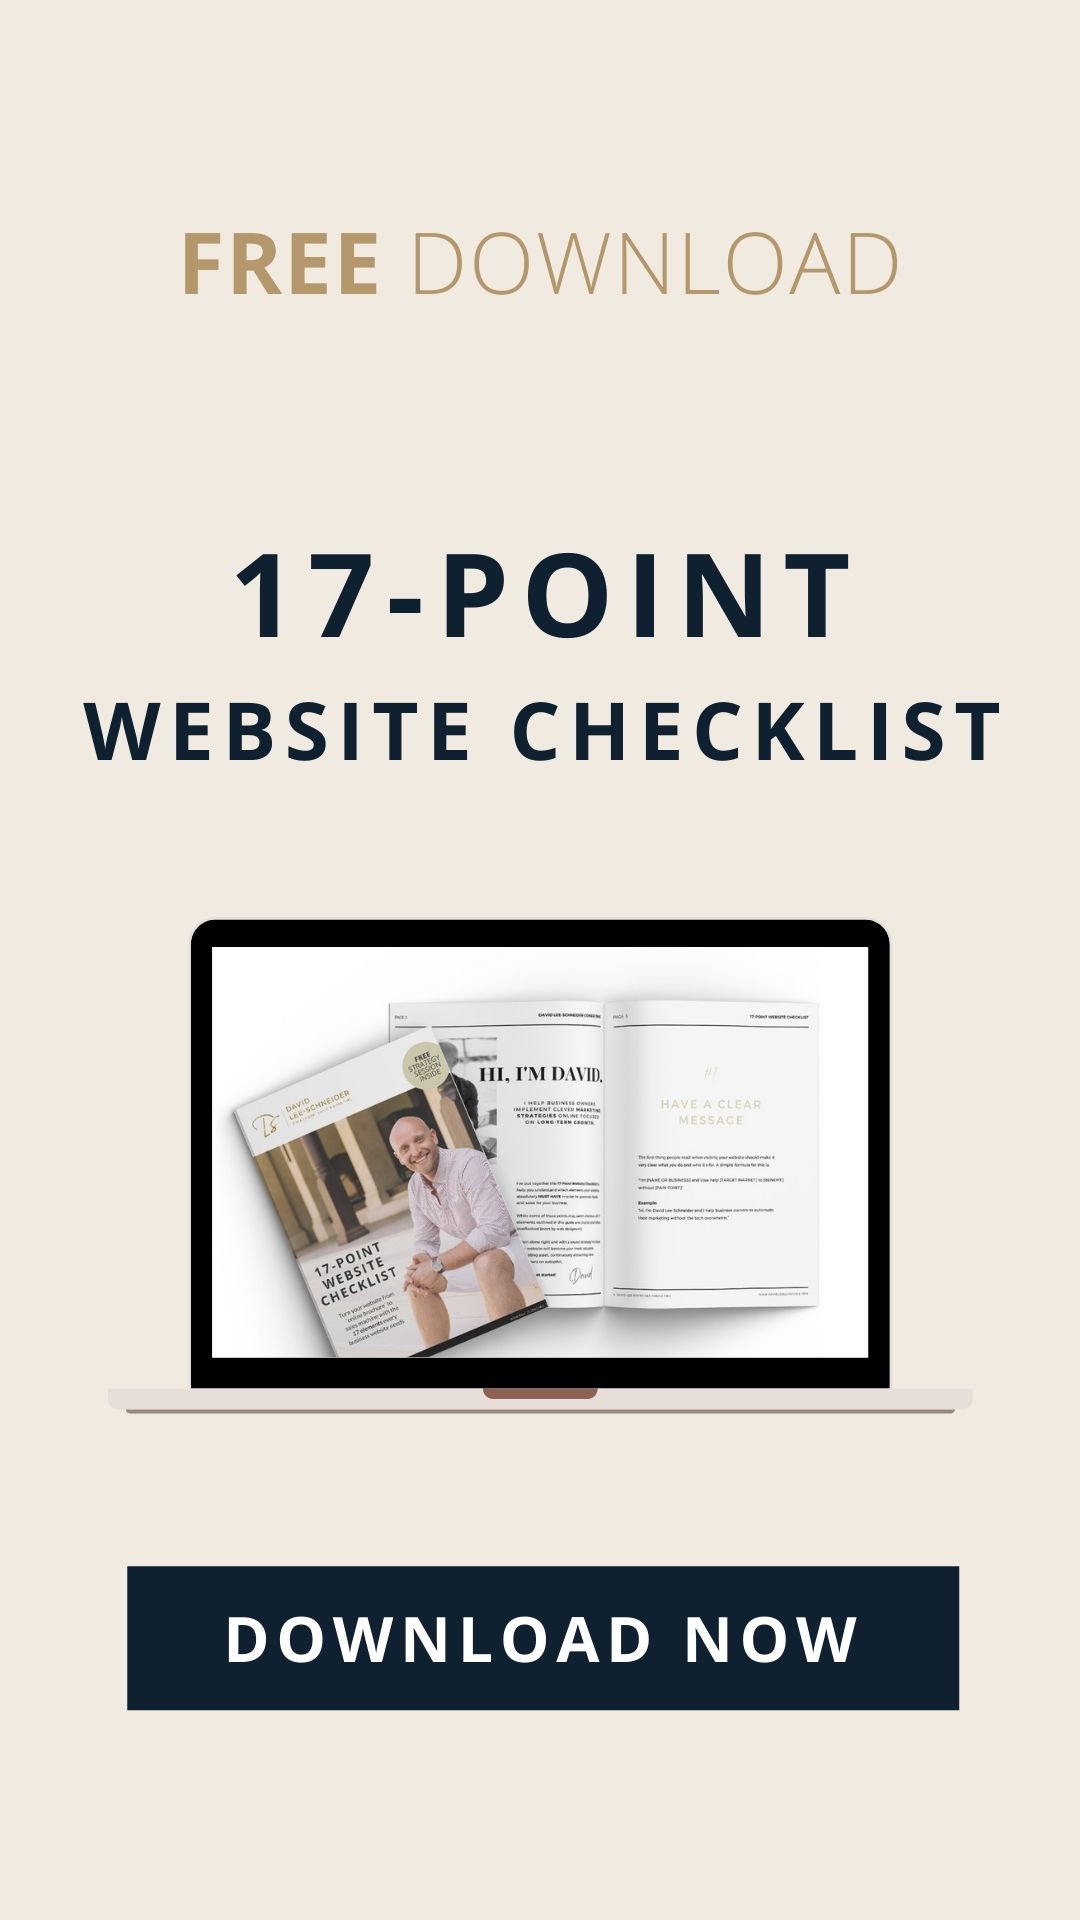 17-Point website checklist - free download